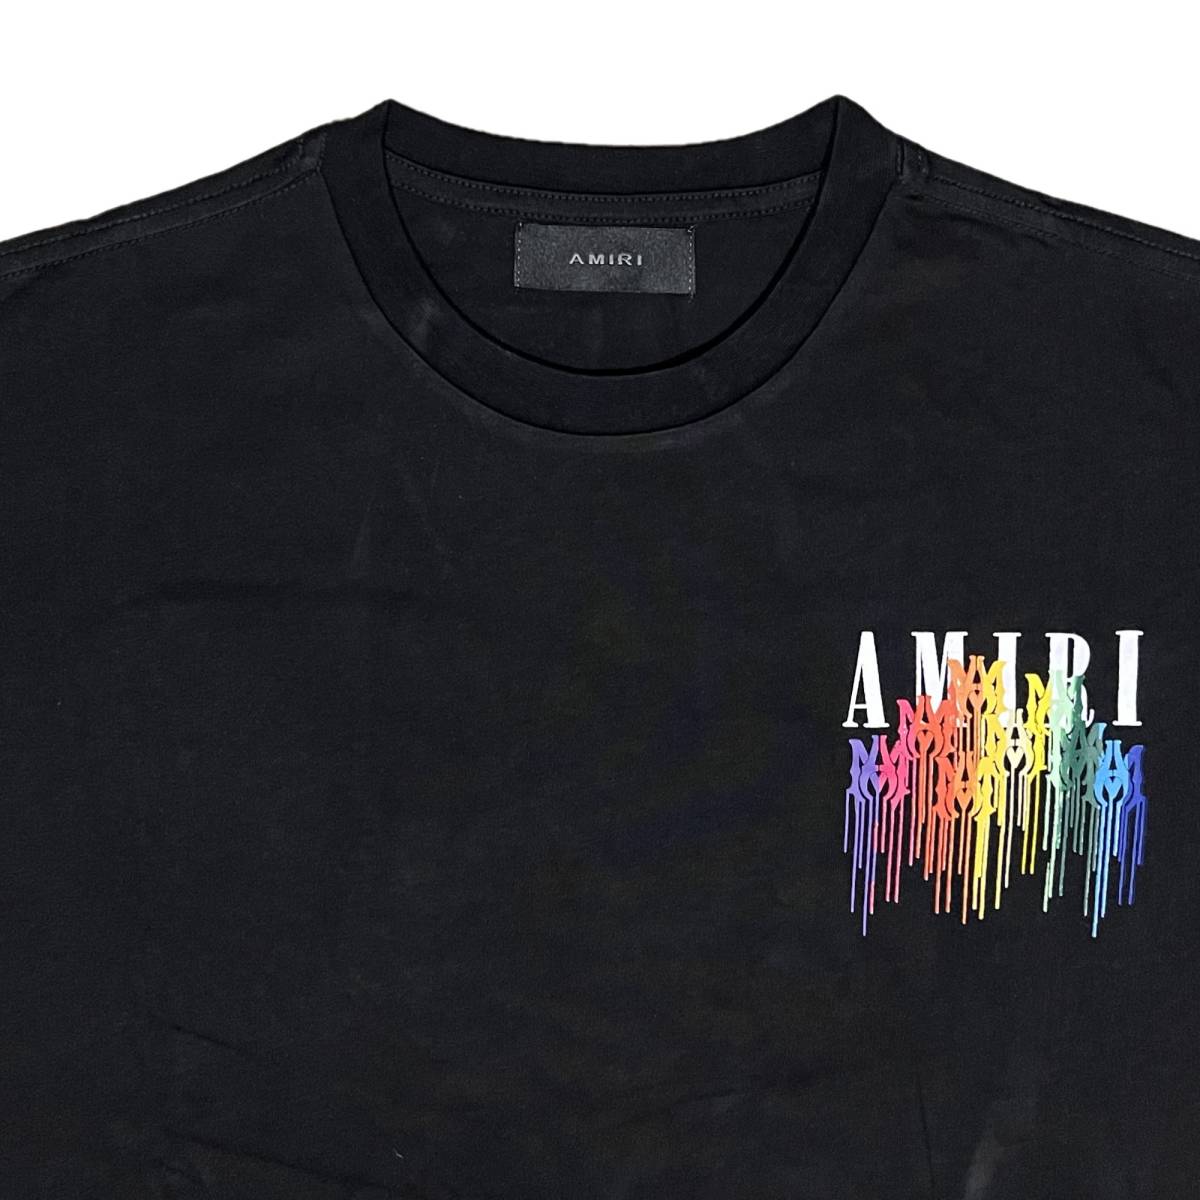 [並行輸入品] AMIRI アミリ DRIP COLLAGE ドリップ コラージュ Tシャツ (ブラック) (M)_画像3